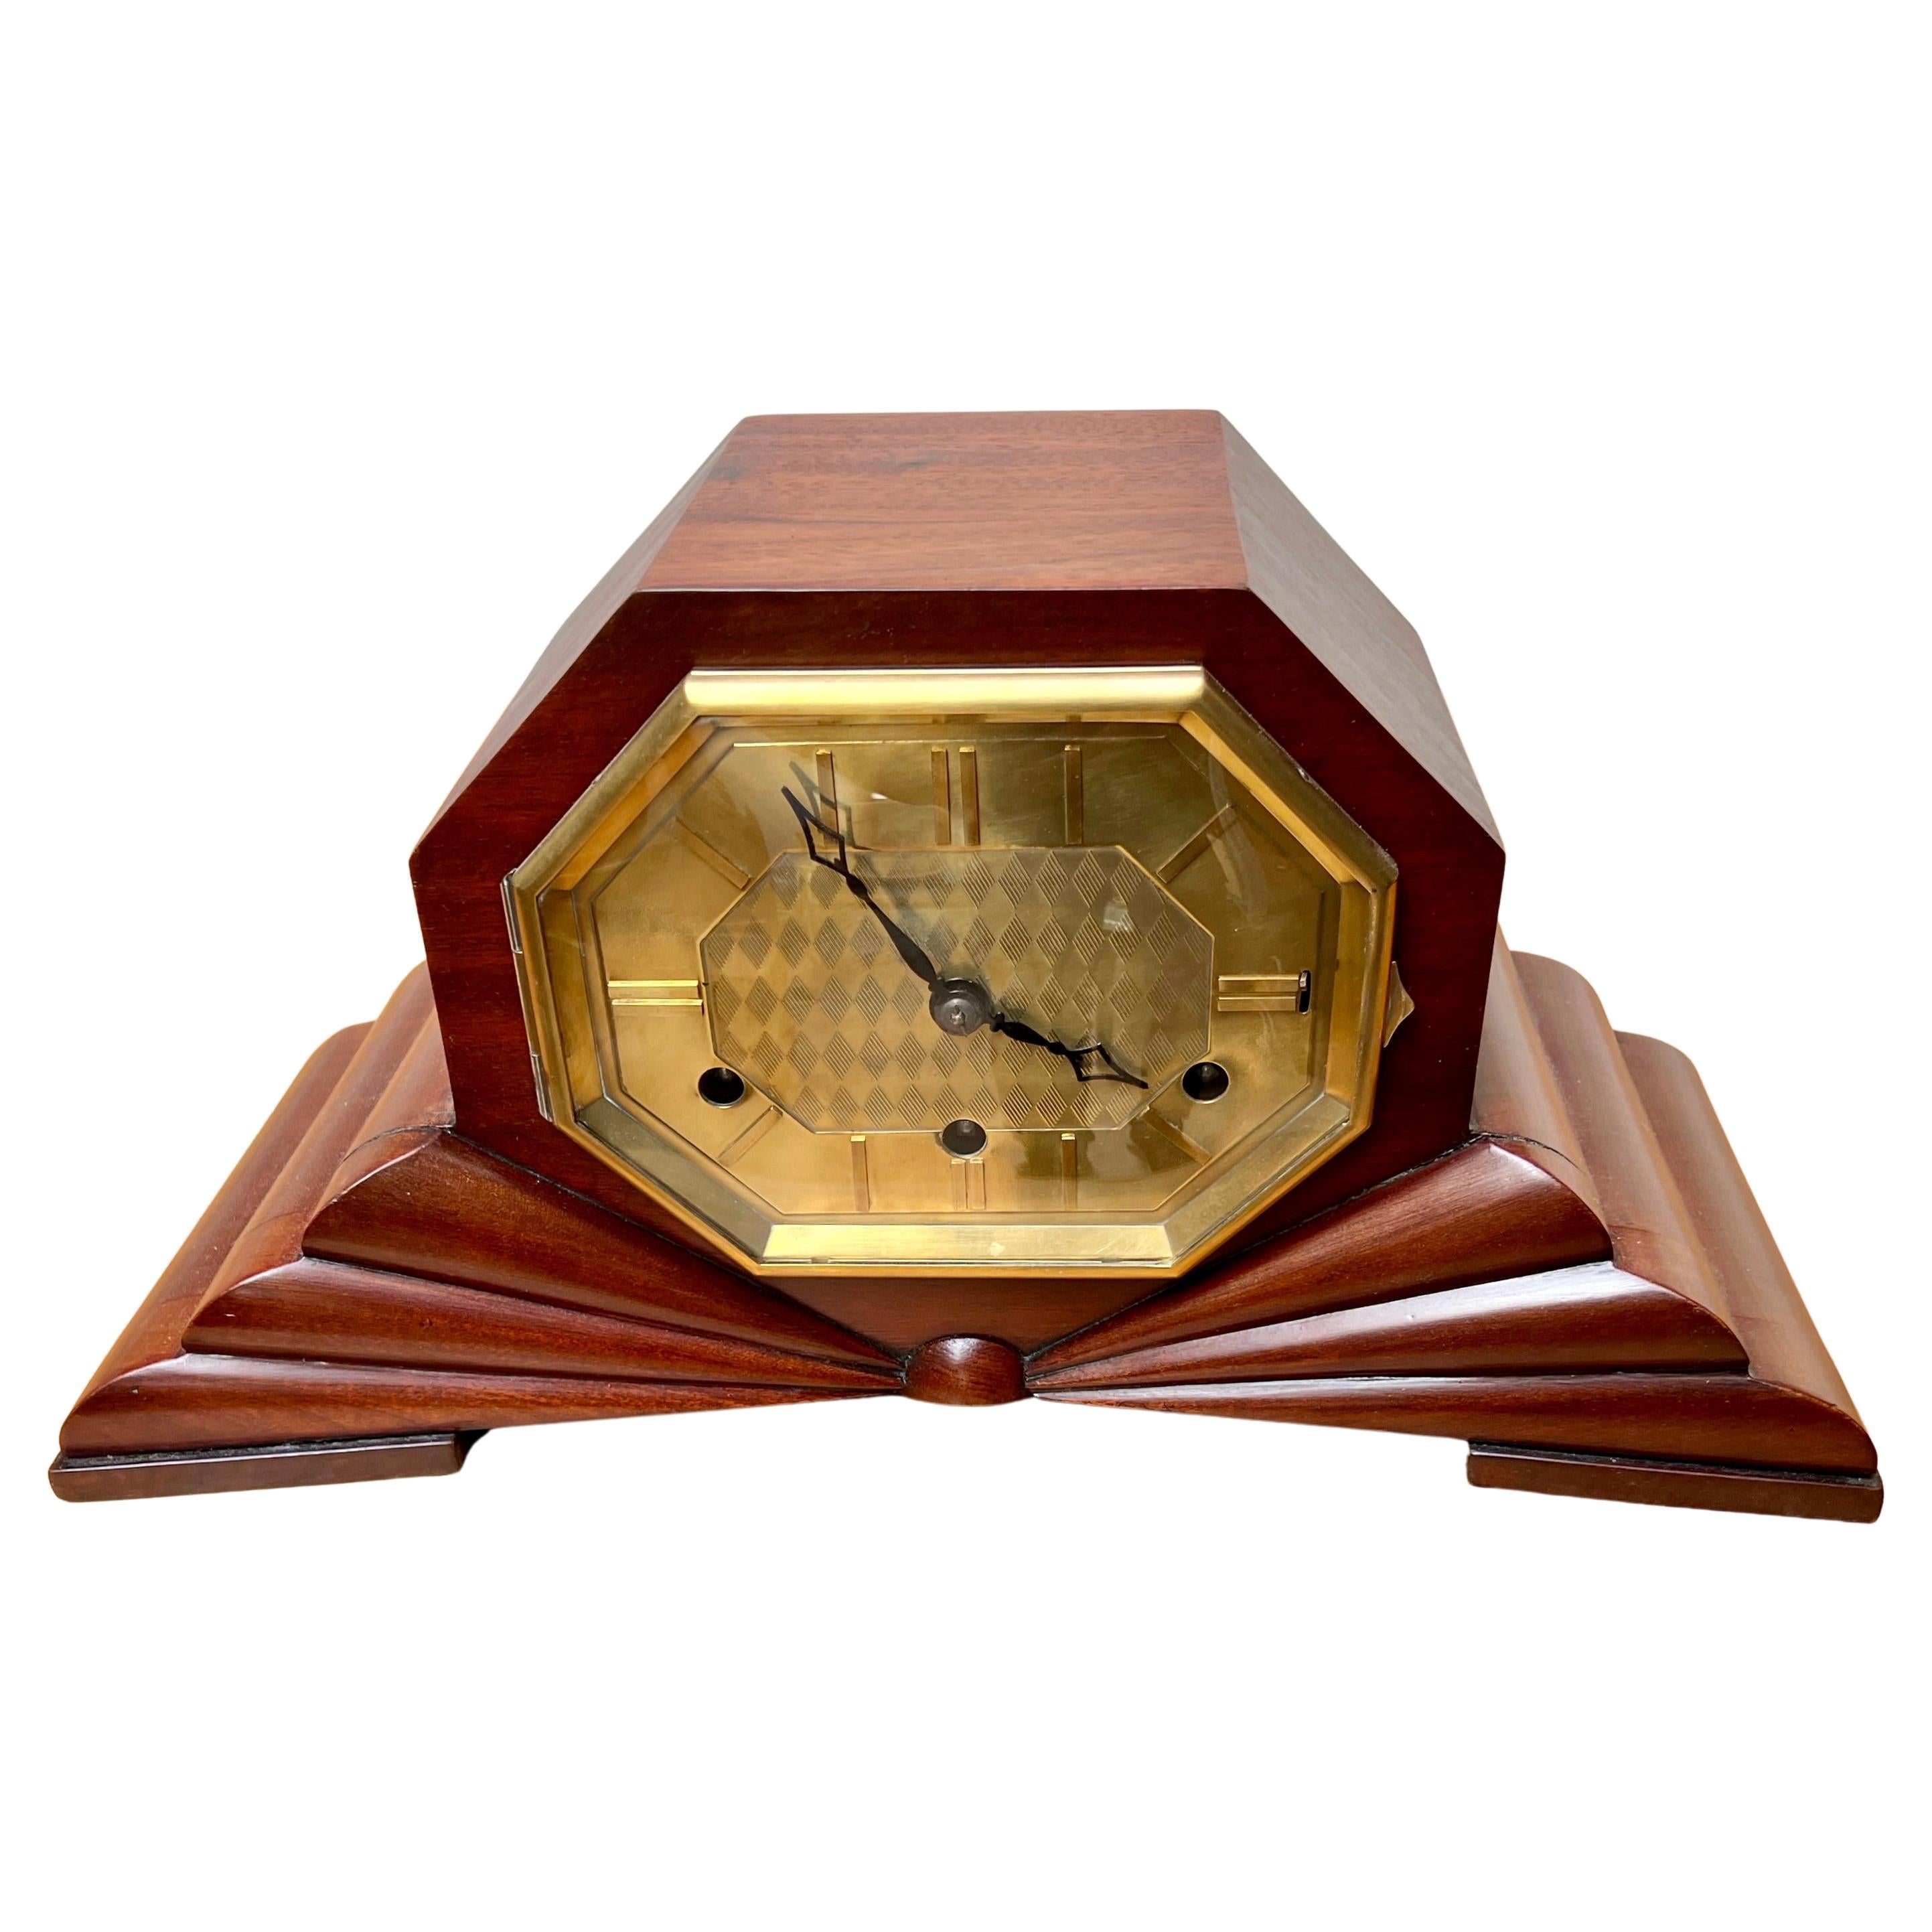 Pure Art Deco, Marvelous Design & Warm Color Nutwood Mantle / Desk / Table Clock